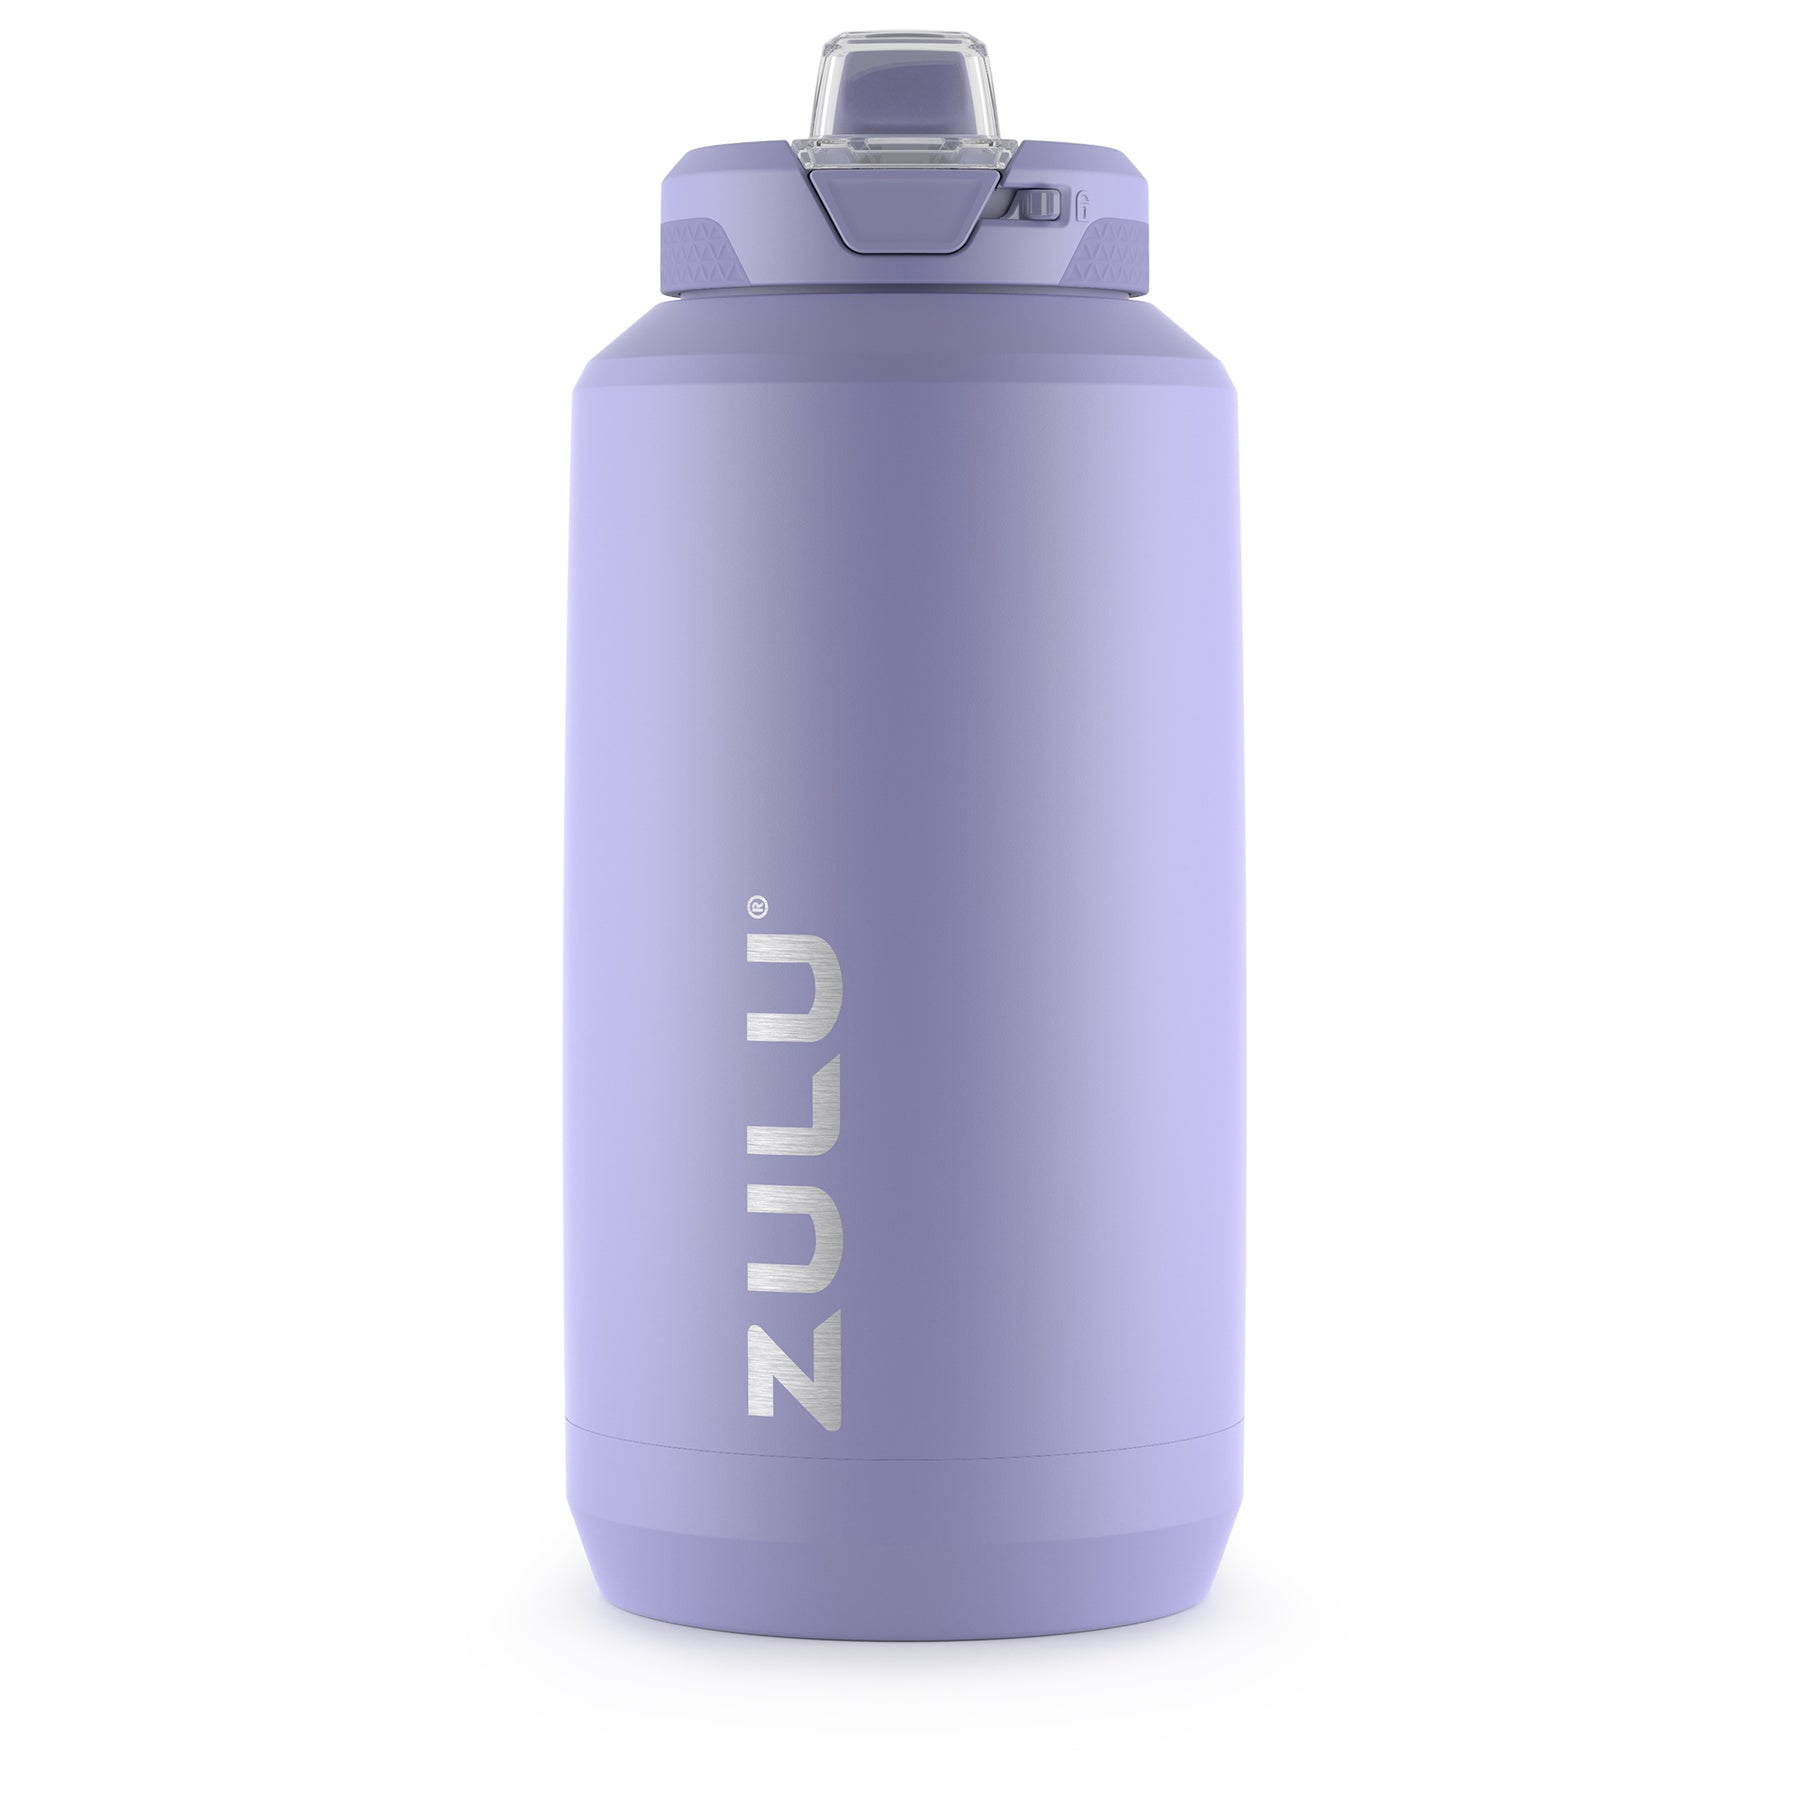 Zulu Swift 32oz Stainless Steel Water Bottle - Pink  Bottle, Half gallon water  bottle, Stainless steel water bottle